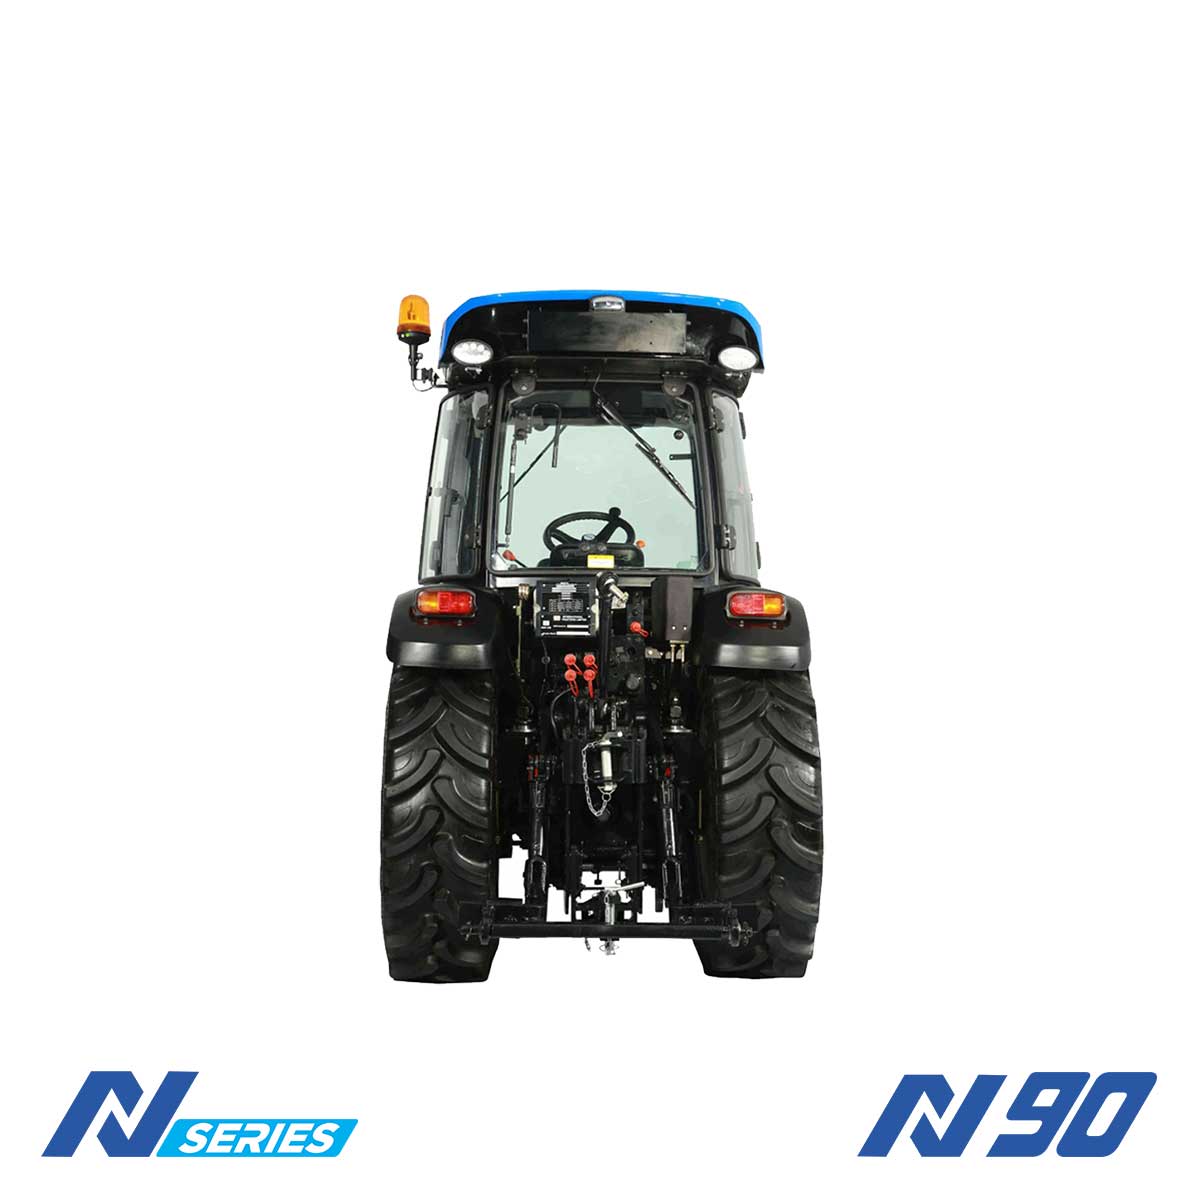 Ültetvényes traktor